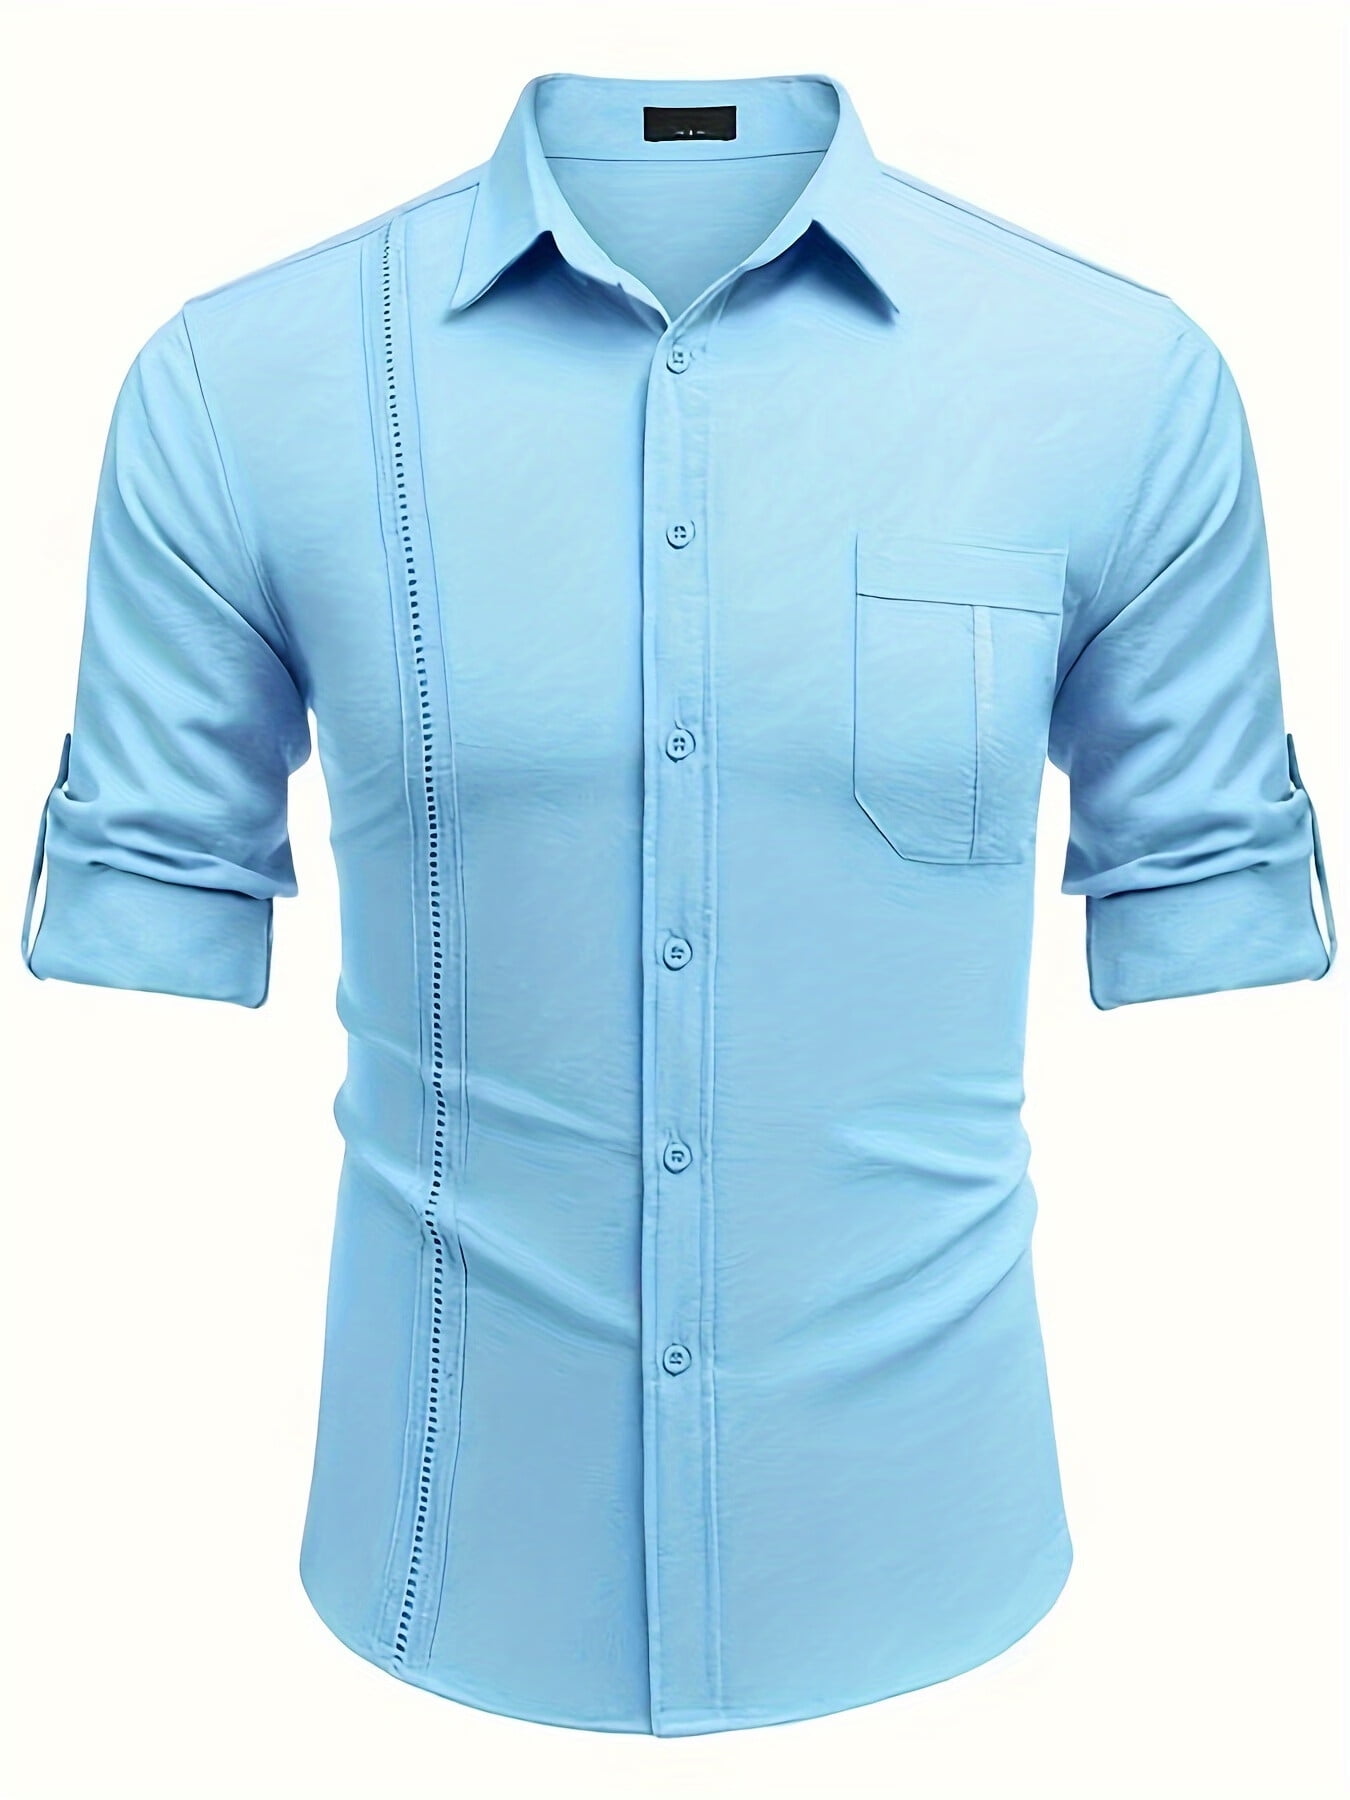 ROYAURA Mens Summer Casual Long Sleeve Cotton Linen Shirts Buttons Up ...